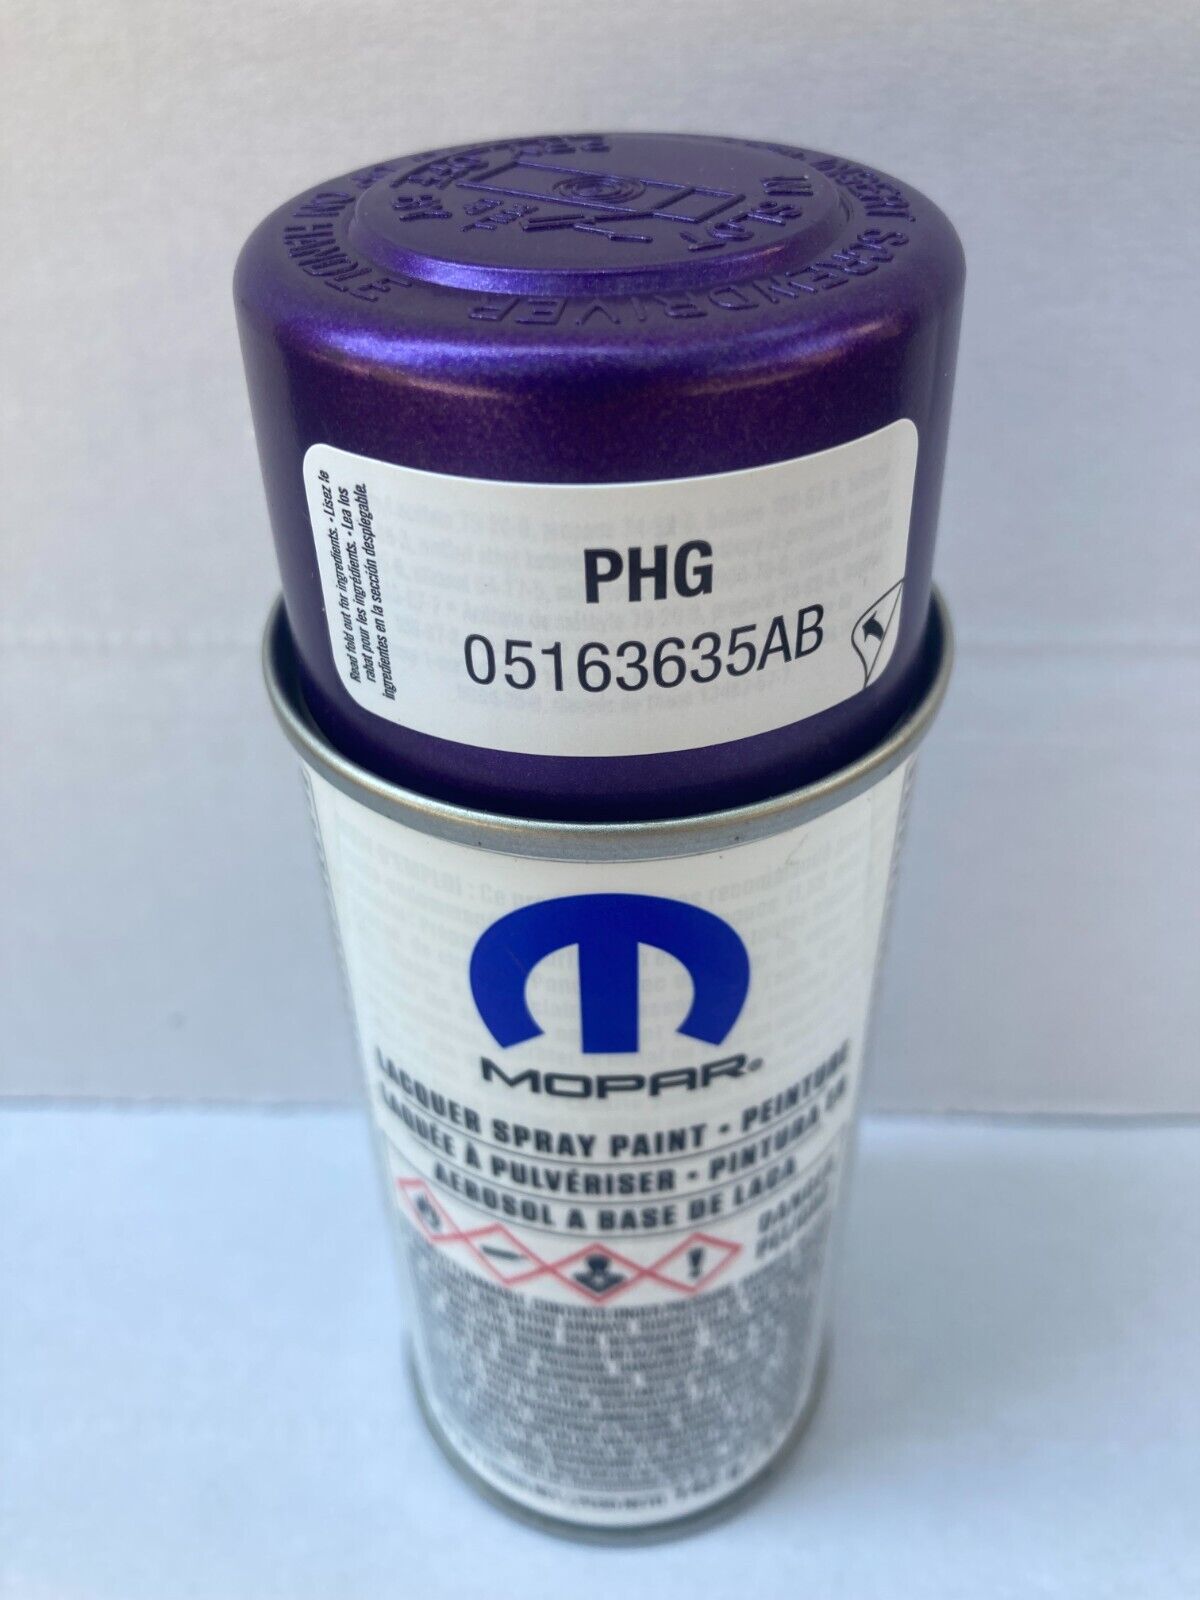 Plum Crazy / Xtreme Purple PHG Touch Up Paint